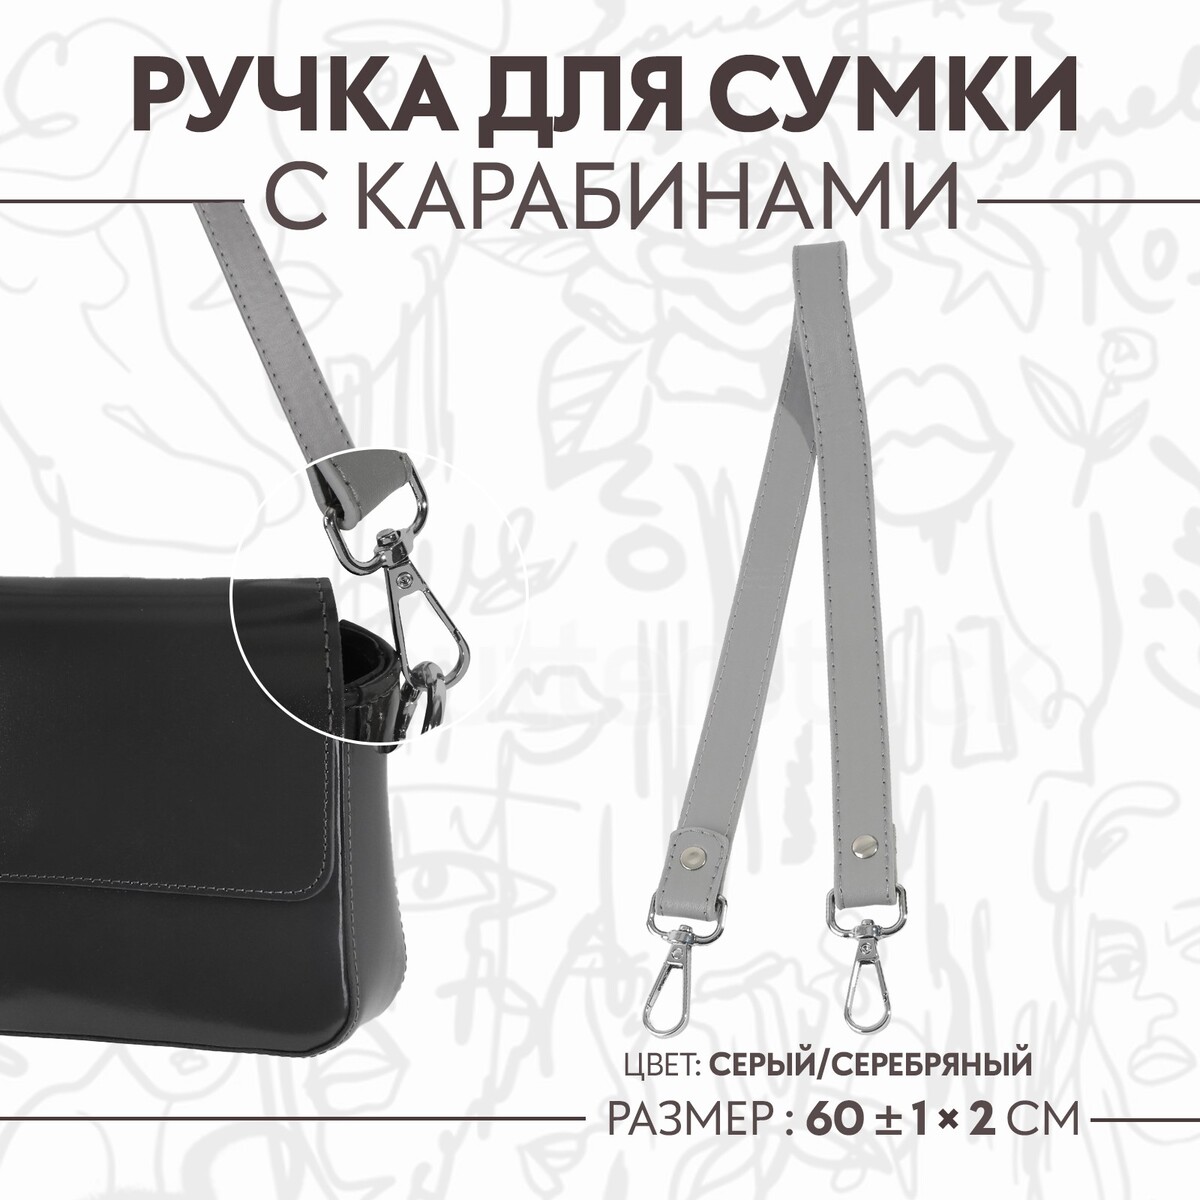 Ручка для сумки, с карабинами, 60 ± 1 см × 2 см, цвет серый ручка для сумки с карабинами 60 ± 1 см × 2 см серый